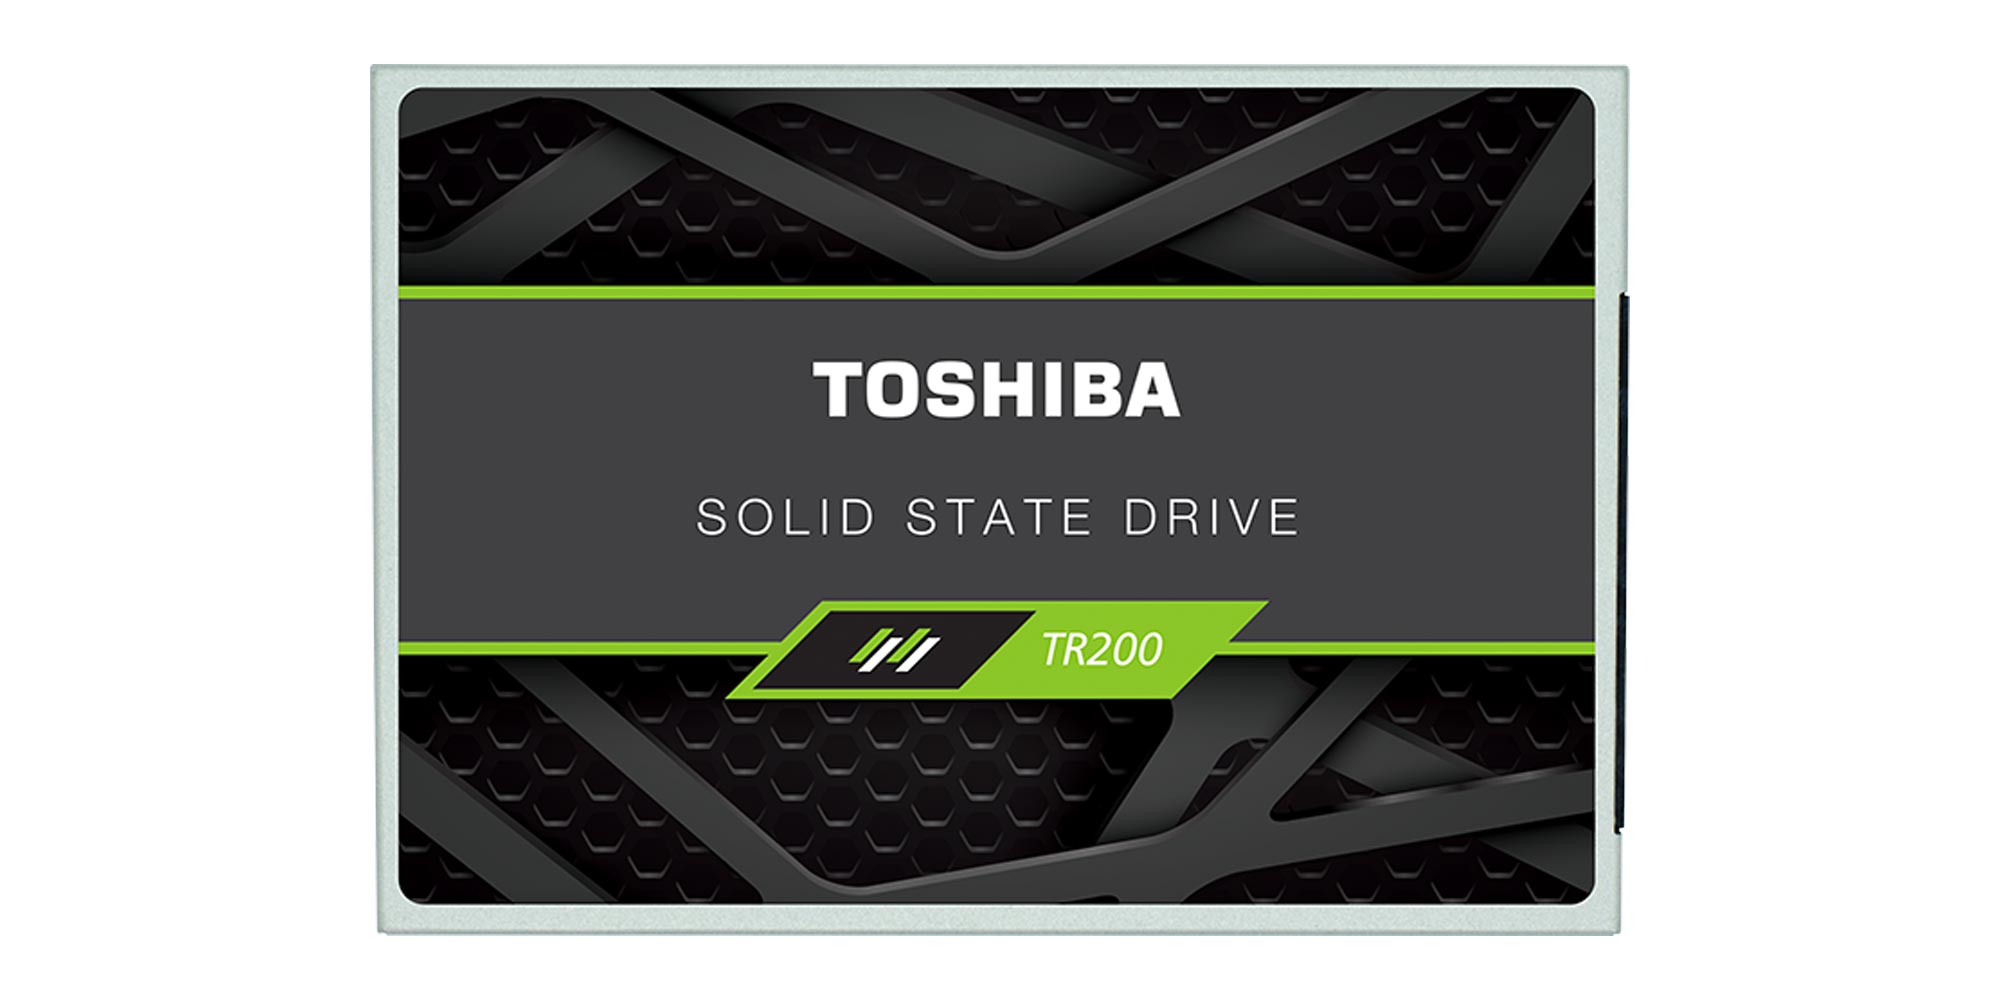 heroic Minimal break Speed up your old Mac w/ a 240GB Toshiba OCZ SSD for $53 (Reg. $65)